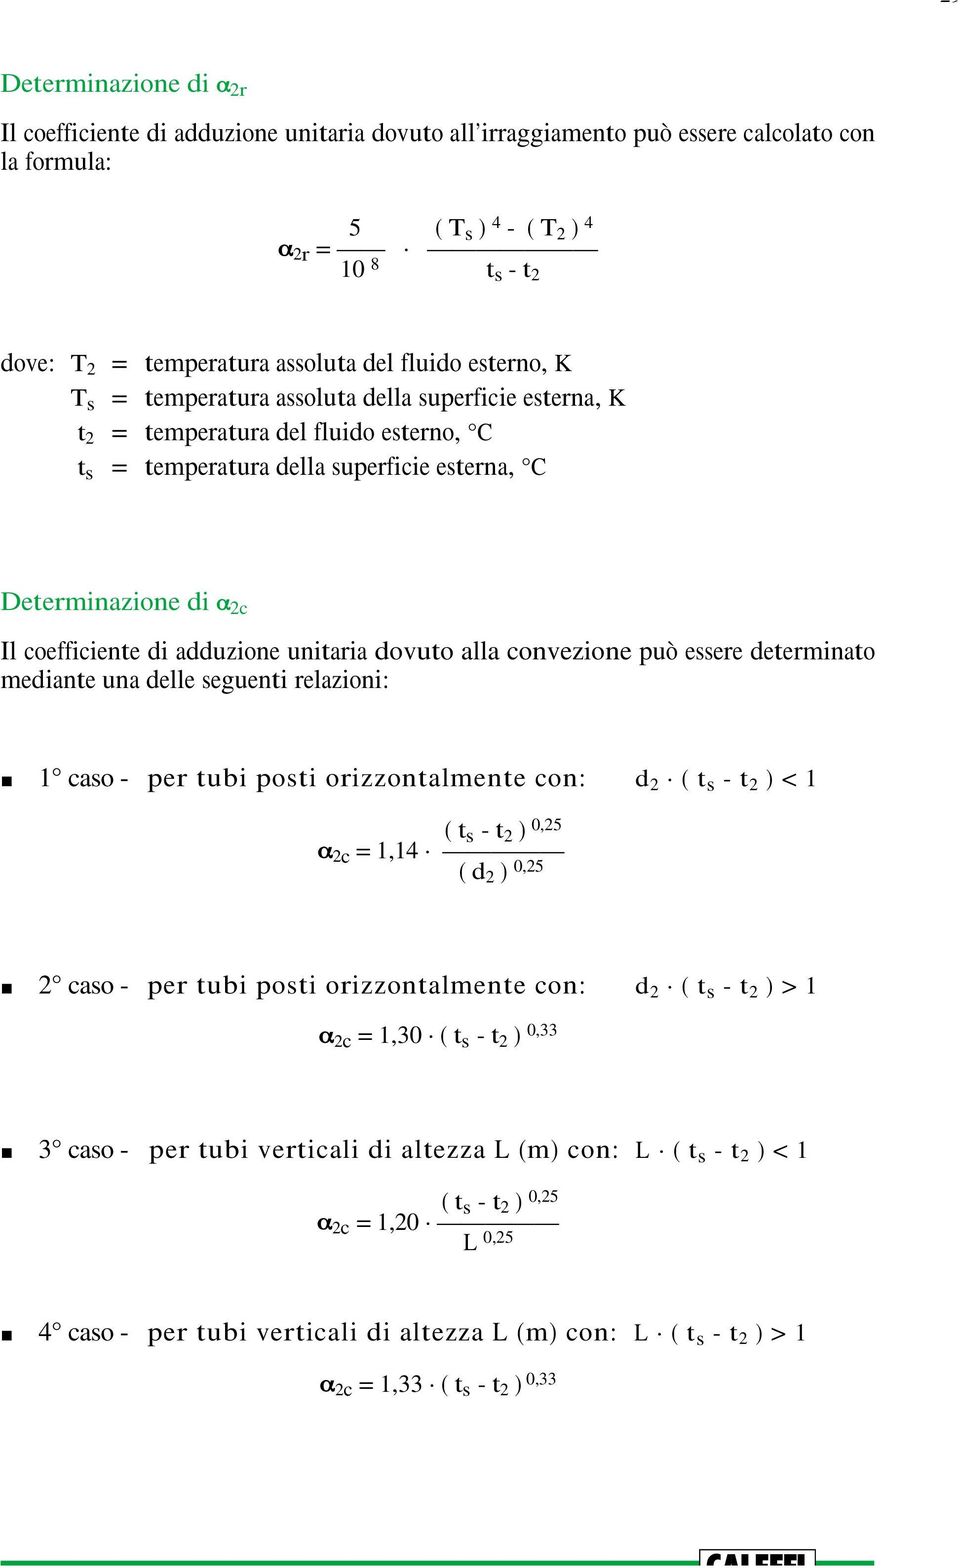 coefficiente di adduzione unitaria dovuto alla convezione può essere determinato mediante una delle seguenti relazioni: 1 caso - per tubi posti orizzontalmente con: d 2 ( t s - t 2 ) < 1 ( t s - t 2